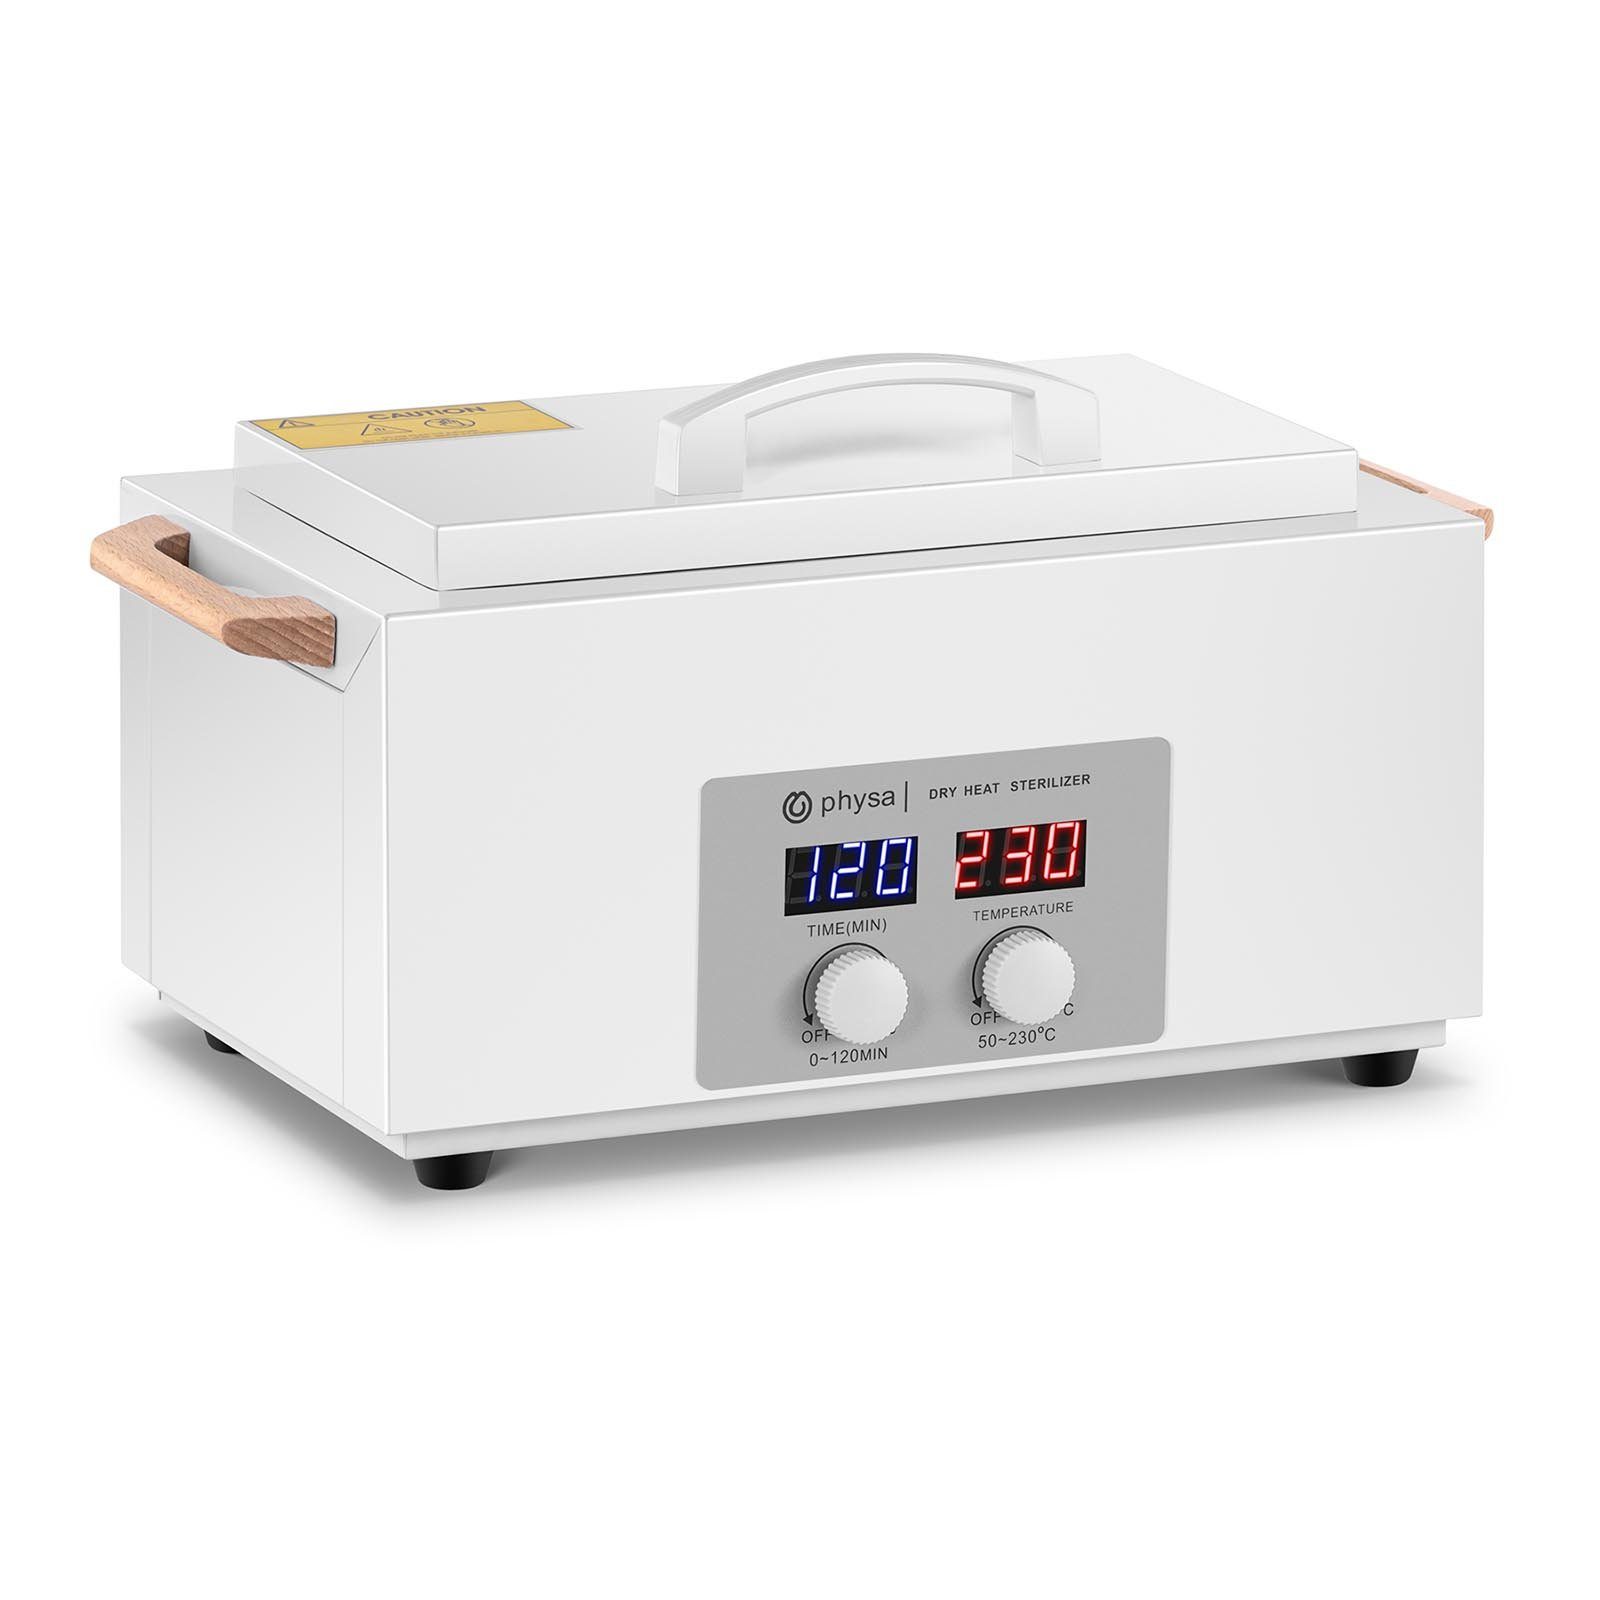 Physa UV-Sterilisator physa Heißluftsterilisator - 1,8 L - Timer - 50 bis  230 °C